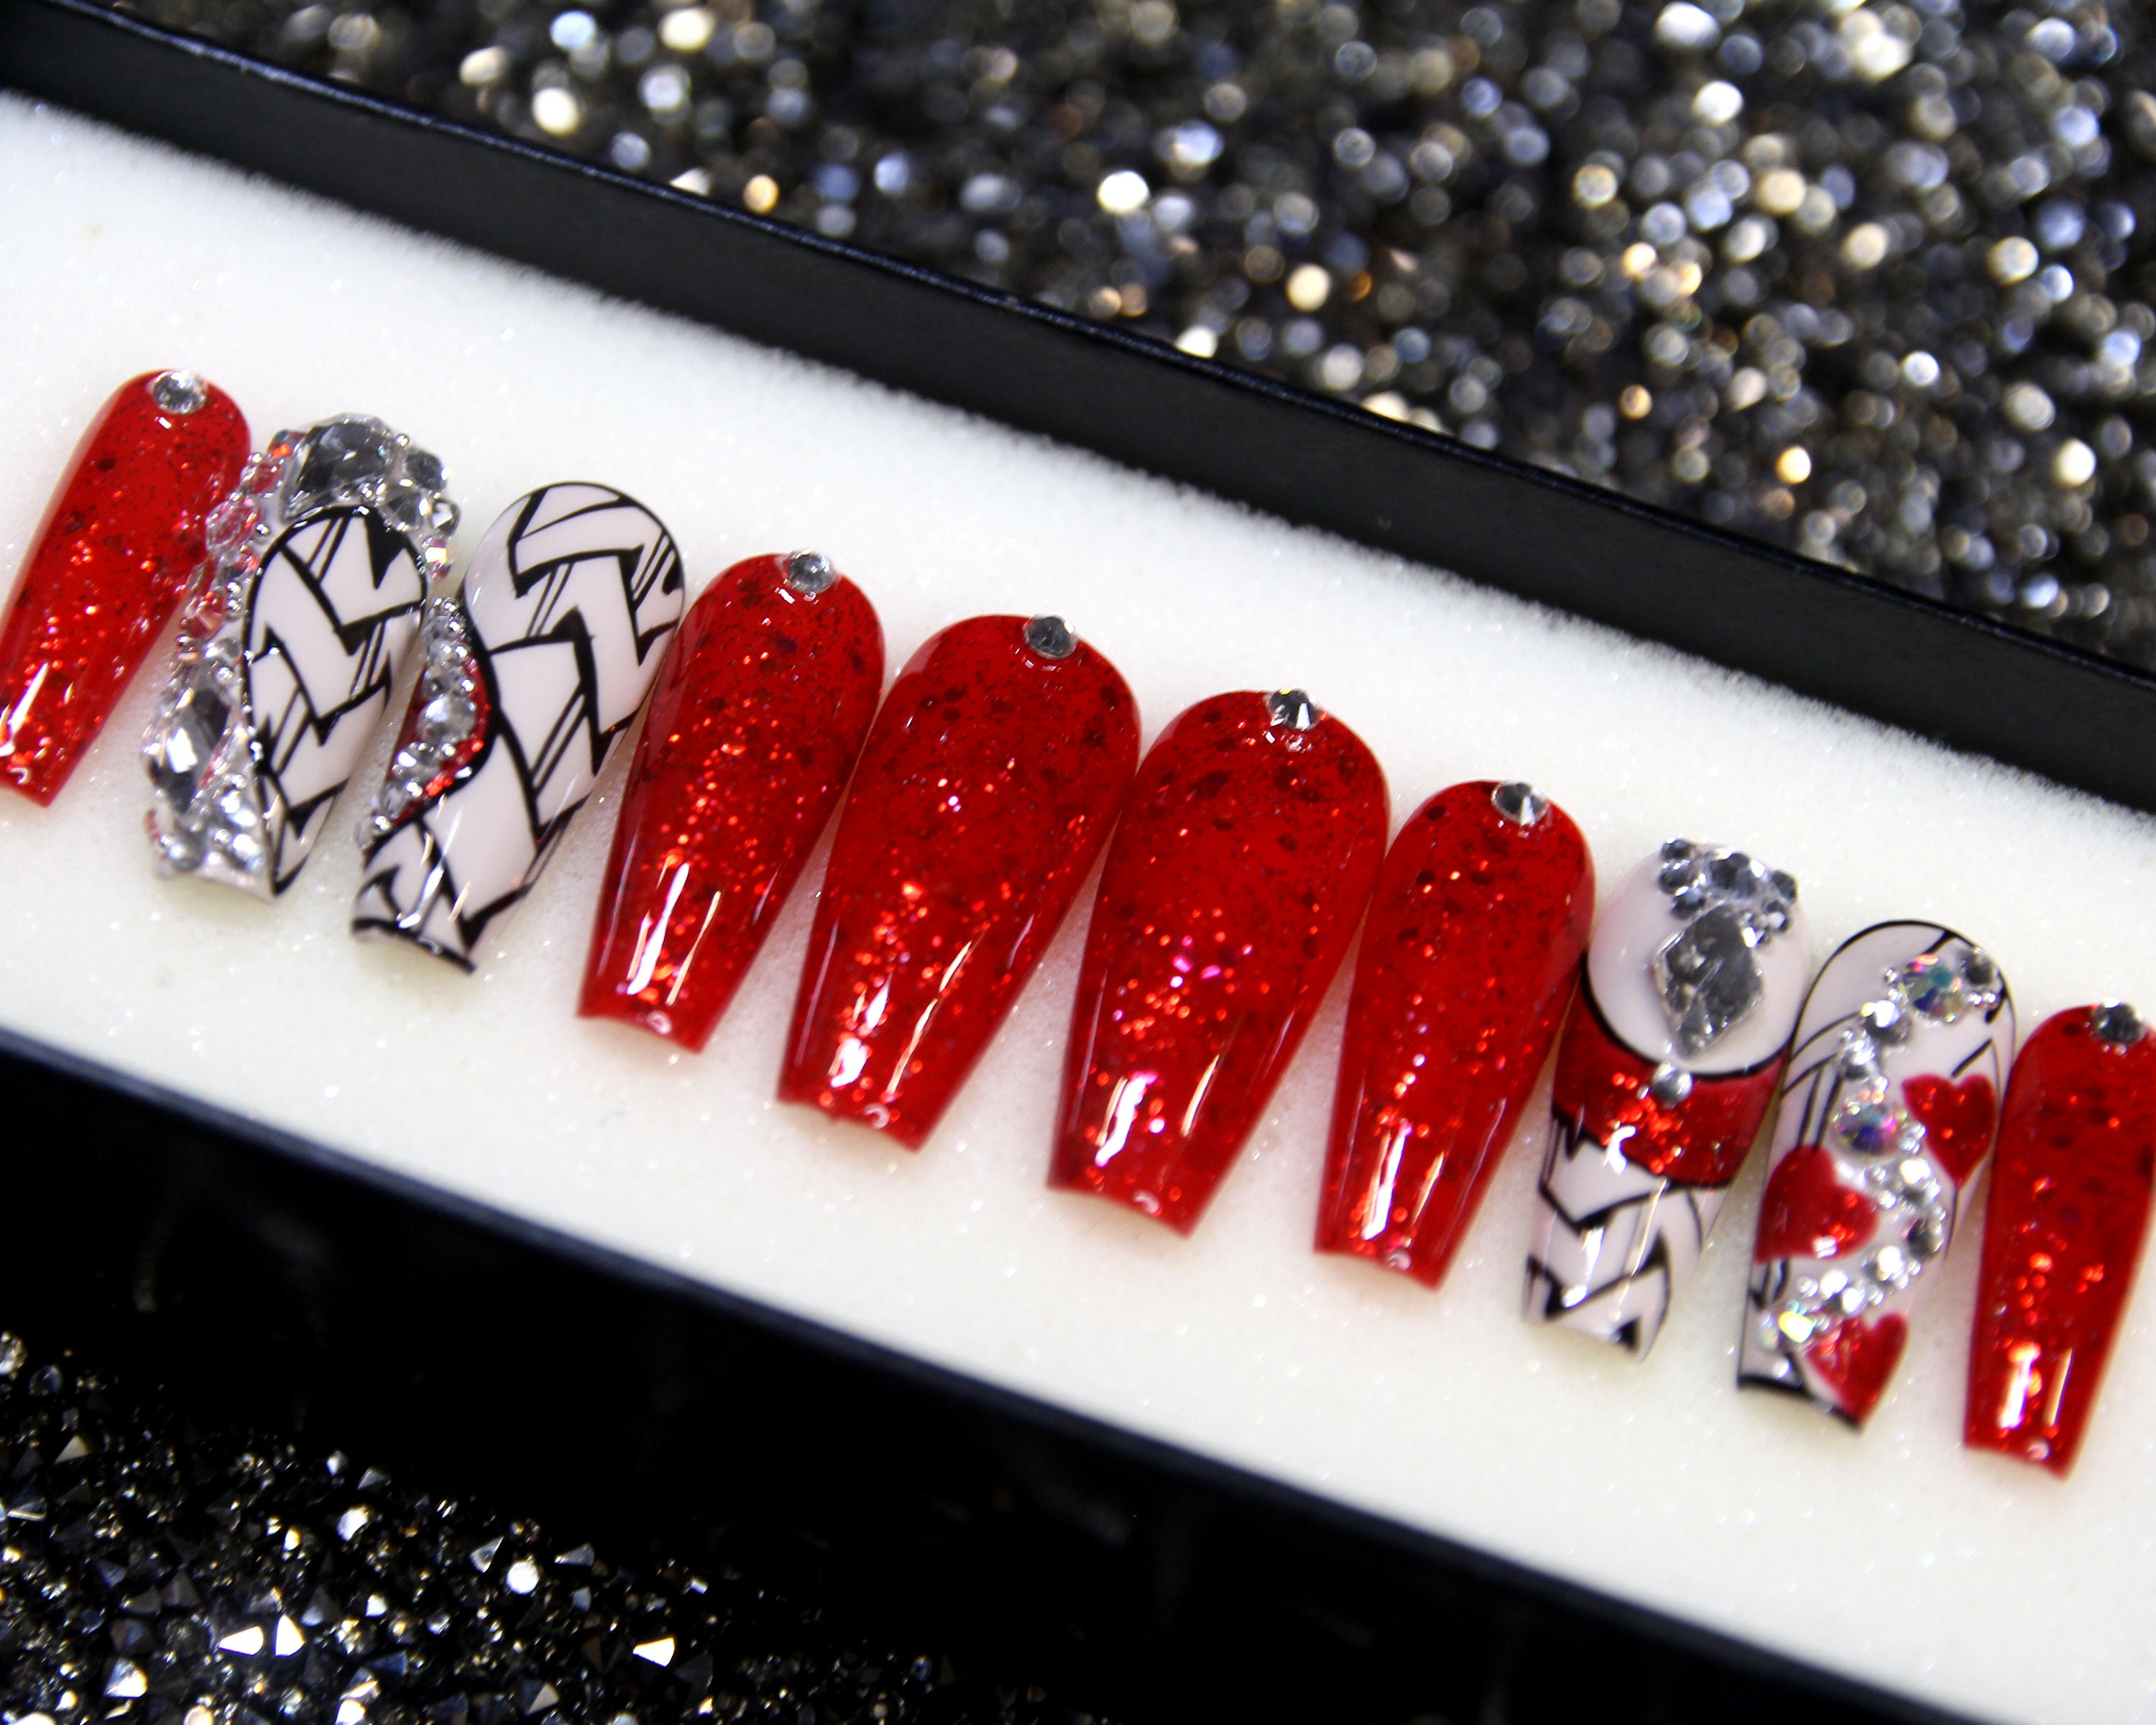 Cruella's Red Press on Nails Fake Nails Glitter - Etsy